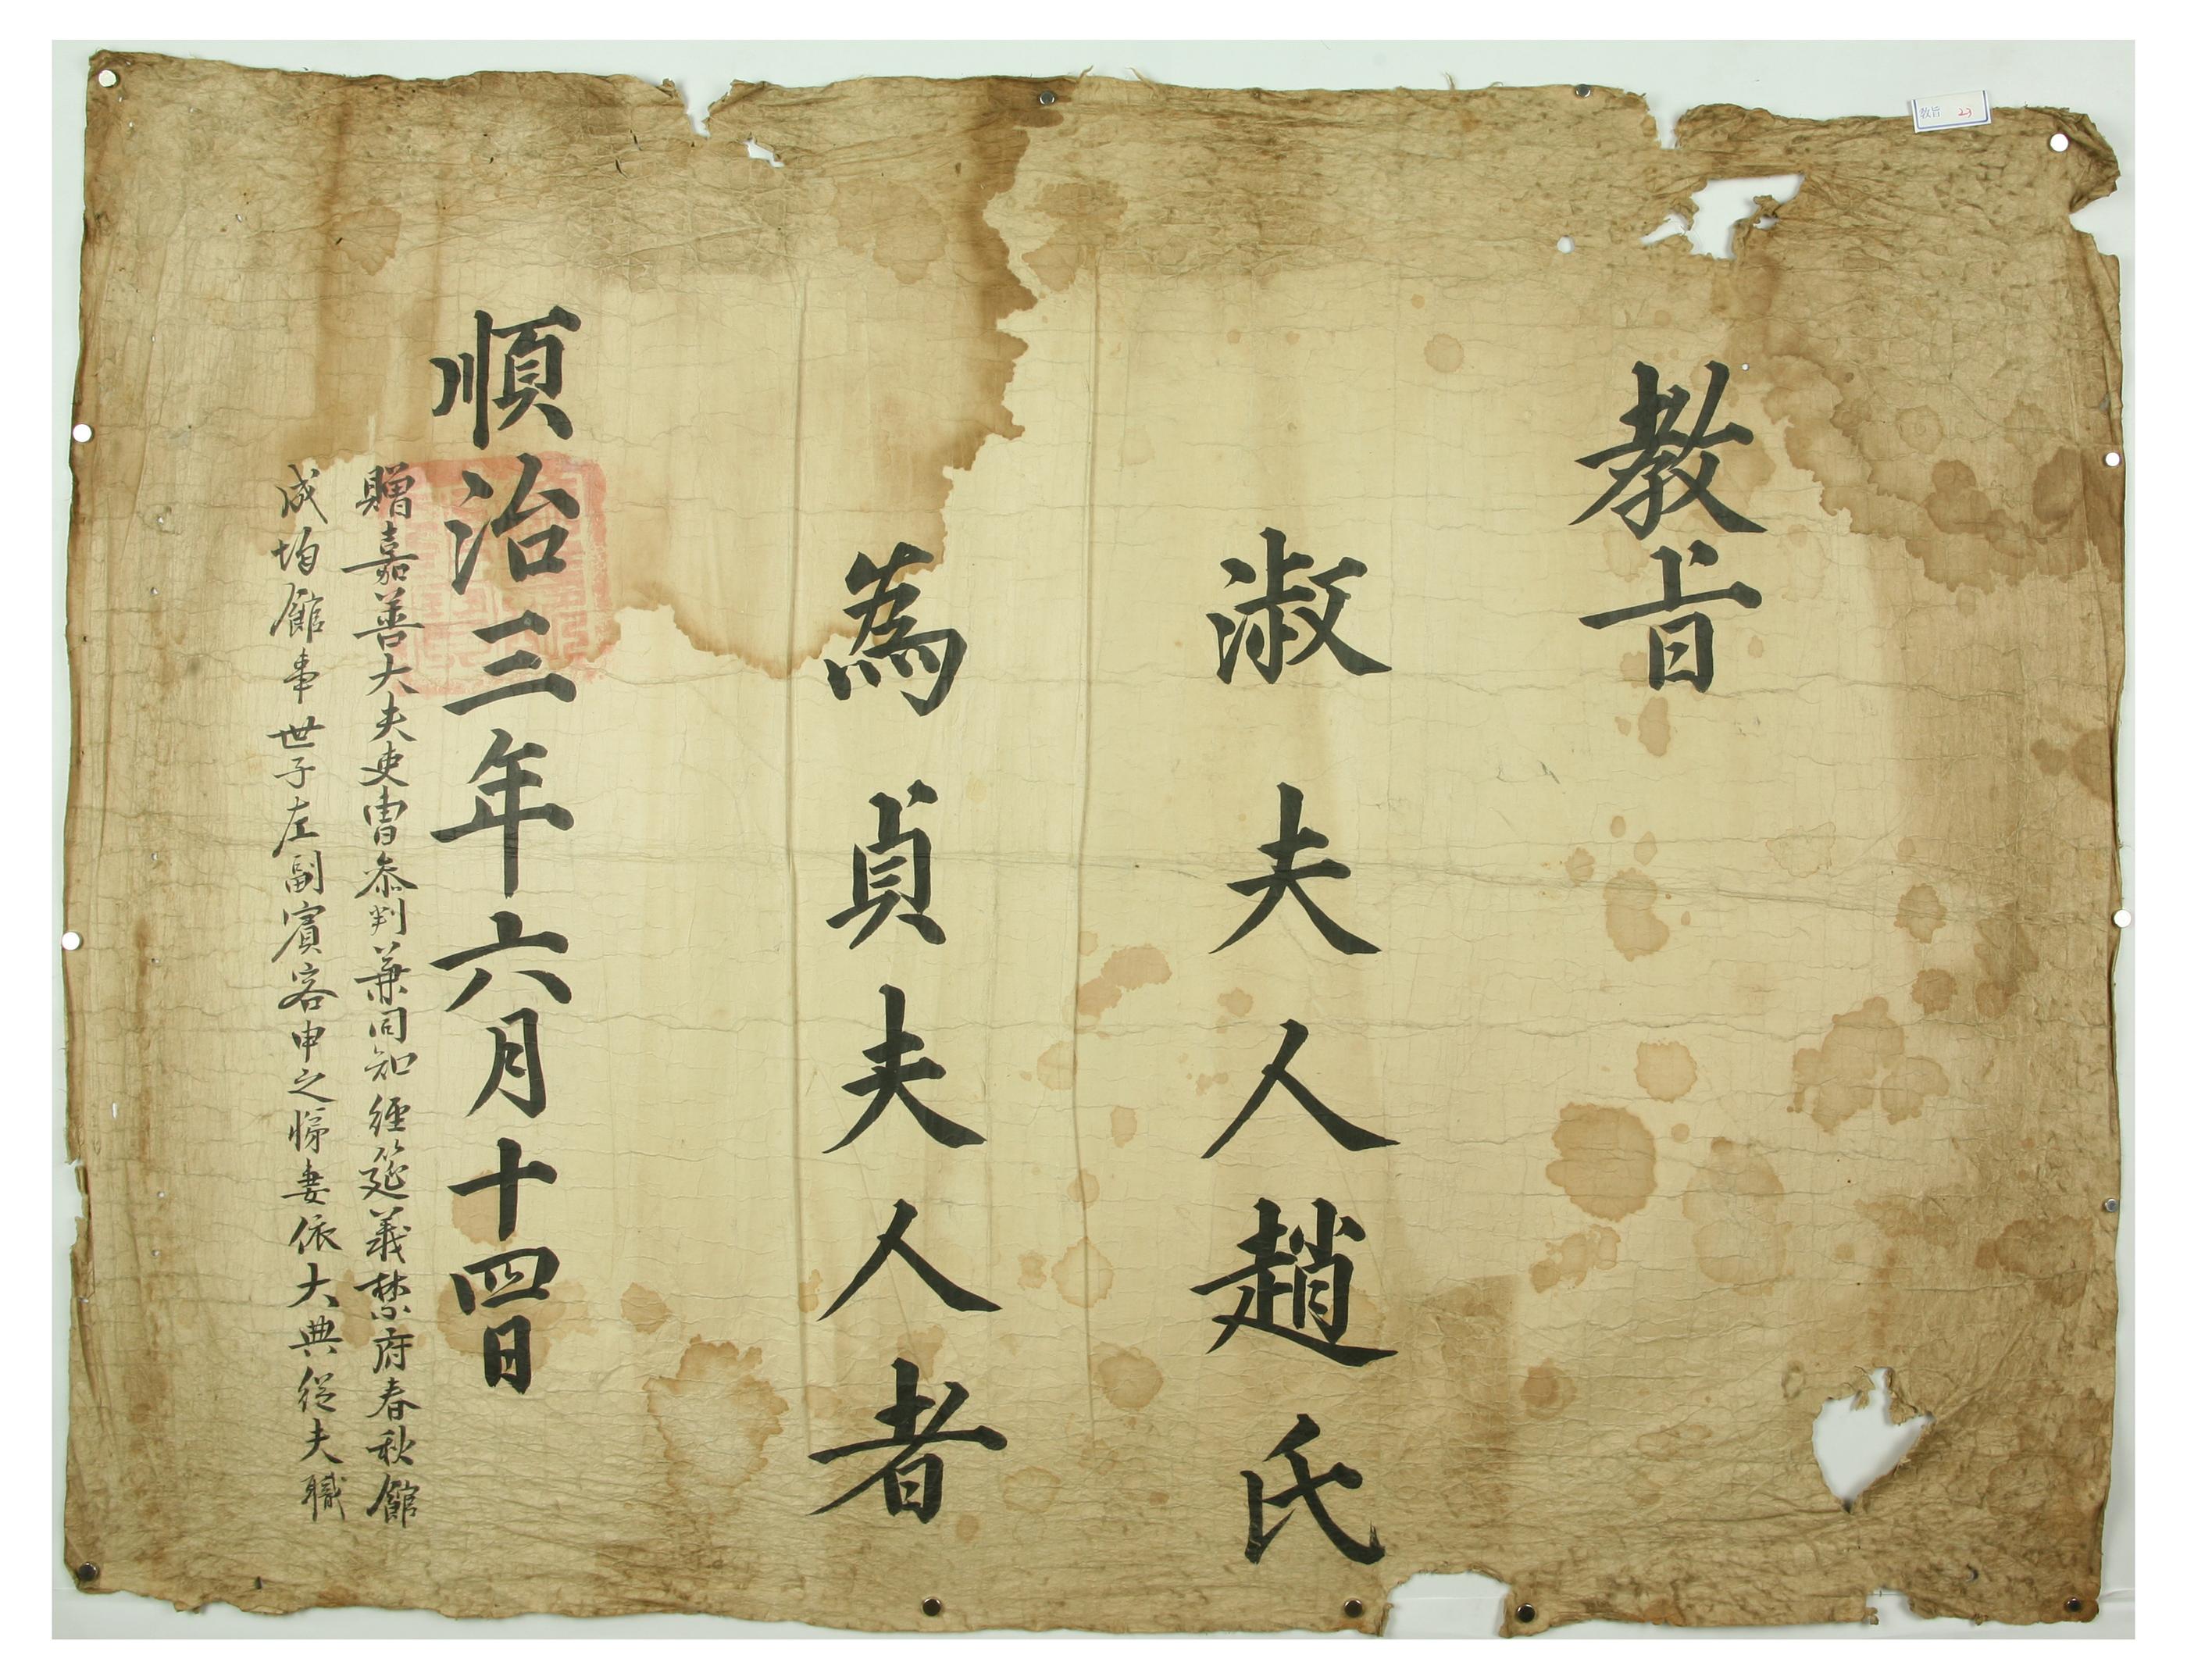 1646년에 인조가 신지제의 처 조씨를 정부인에 증직하는 문서